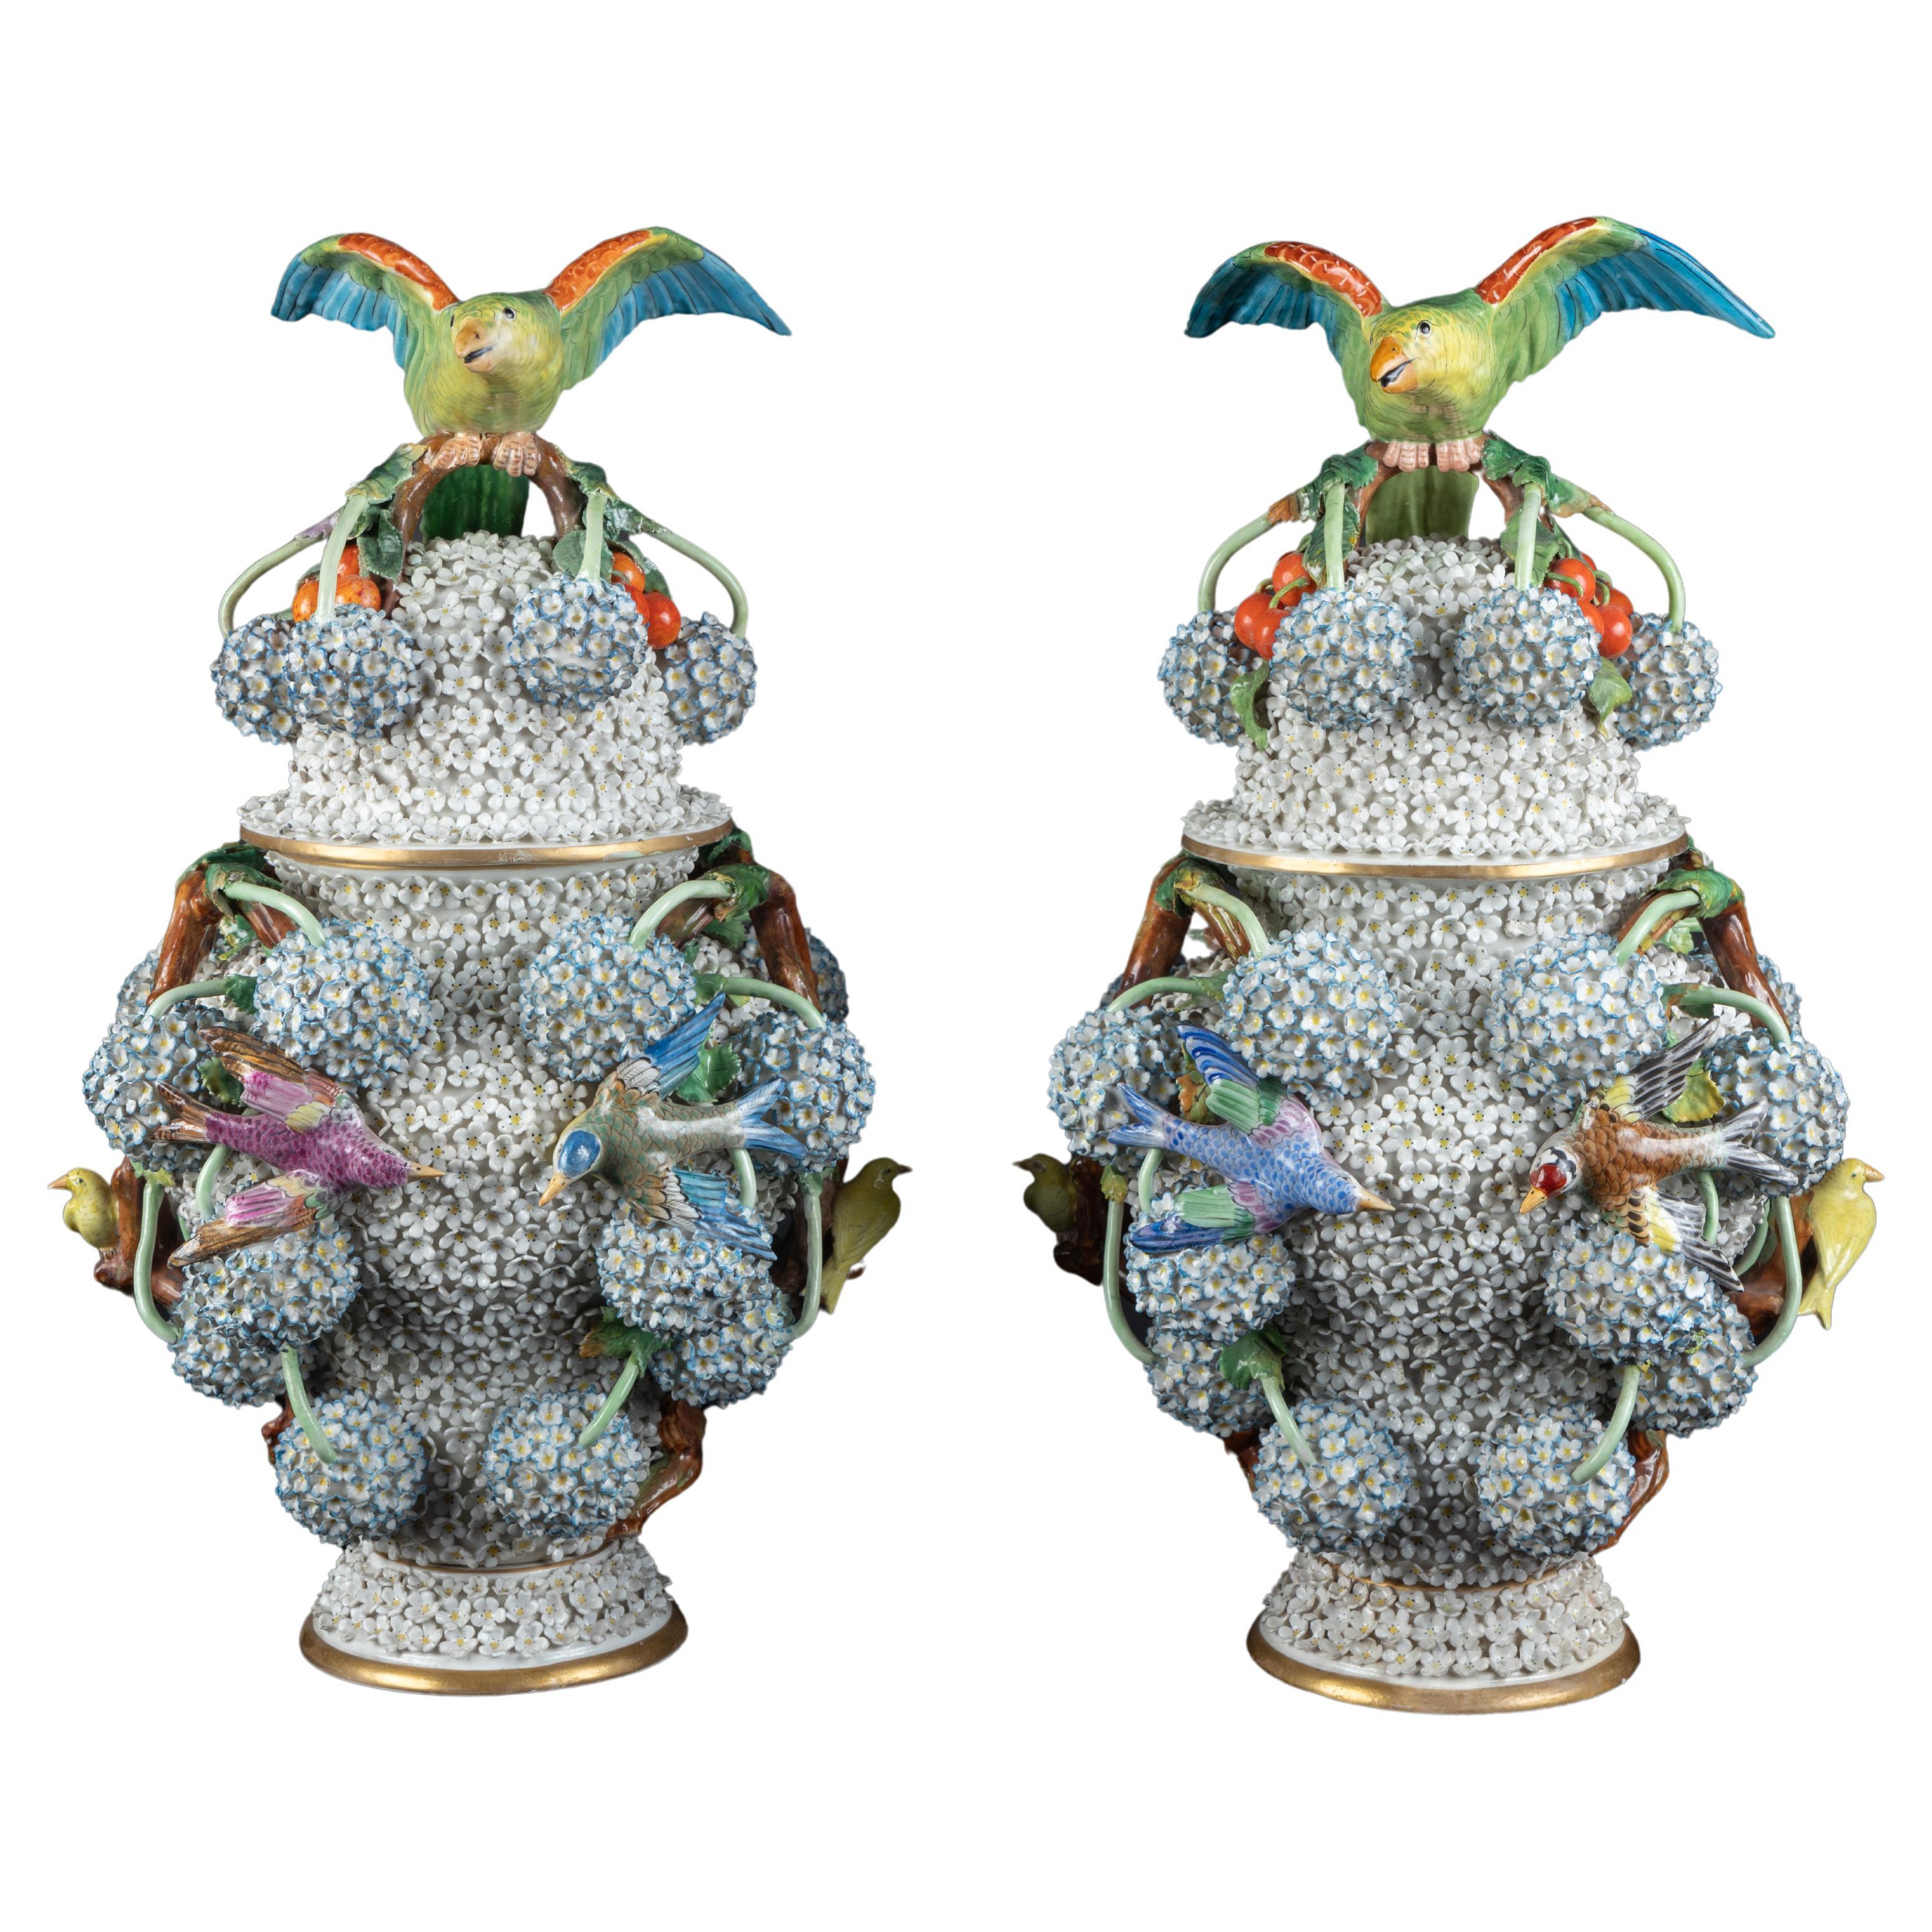 Magnifique paire de vases couverts en porcelaine de Meissen Snowball, marqués